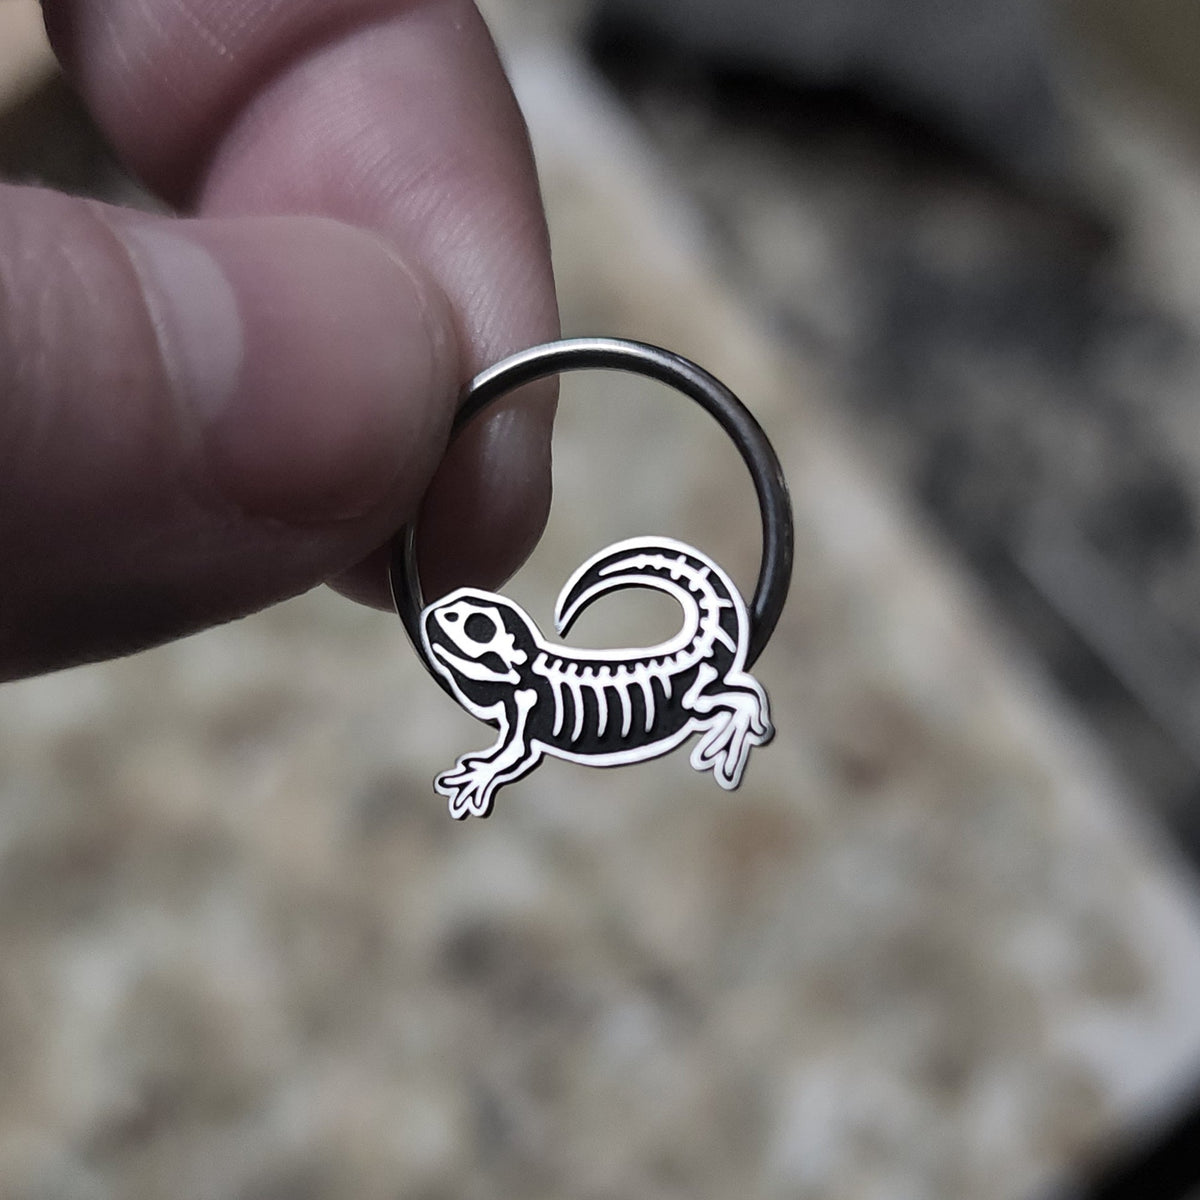 Skeleton Bearded Dragon Captive Bead Ring - Metal Lotus